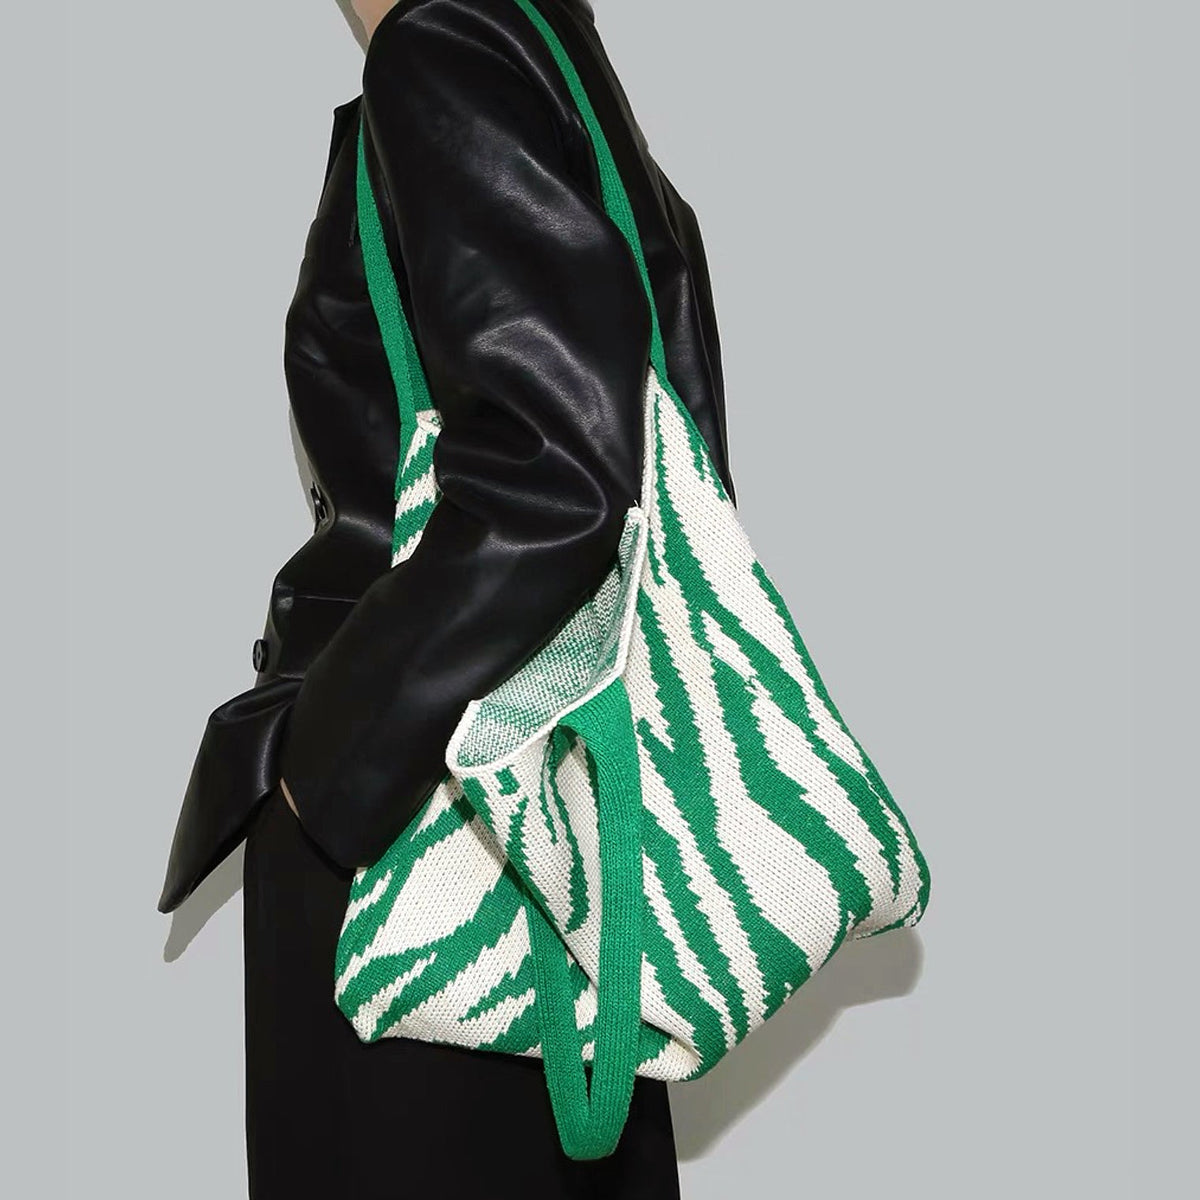 Gestrickte Einkaufstasche mit Zebra-Print - - TascheGestrickte Einkaufstasche mit Zebra-Print - € - - Concept Frankfurt